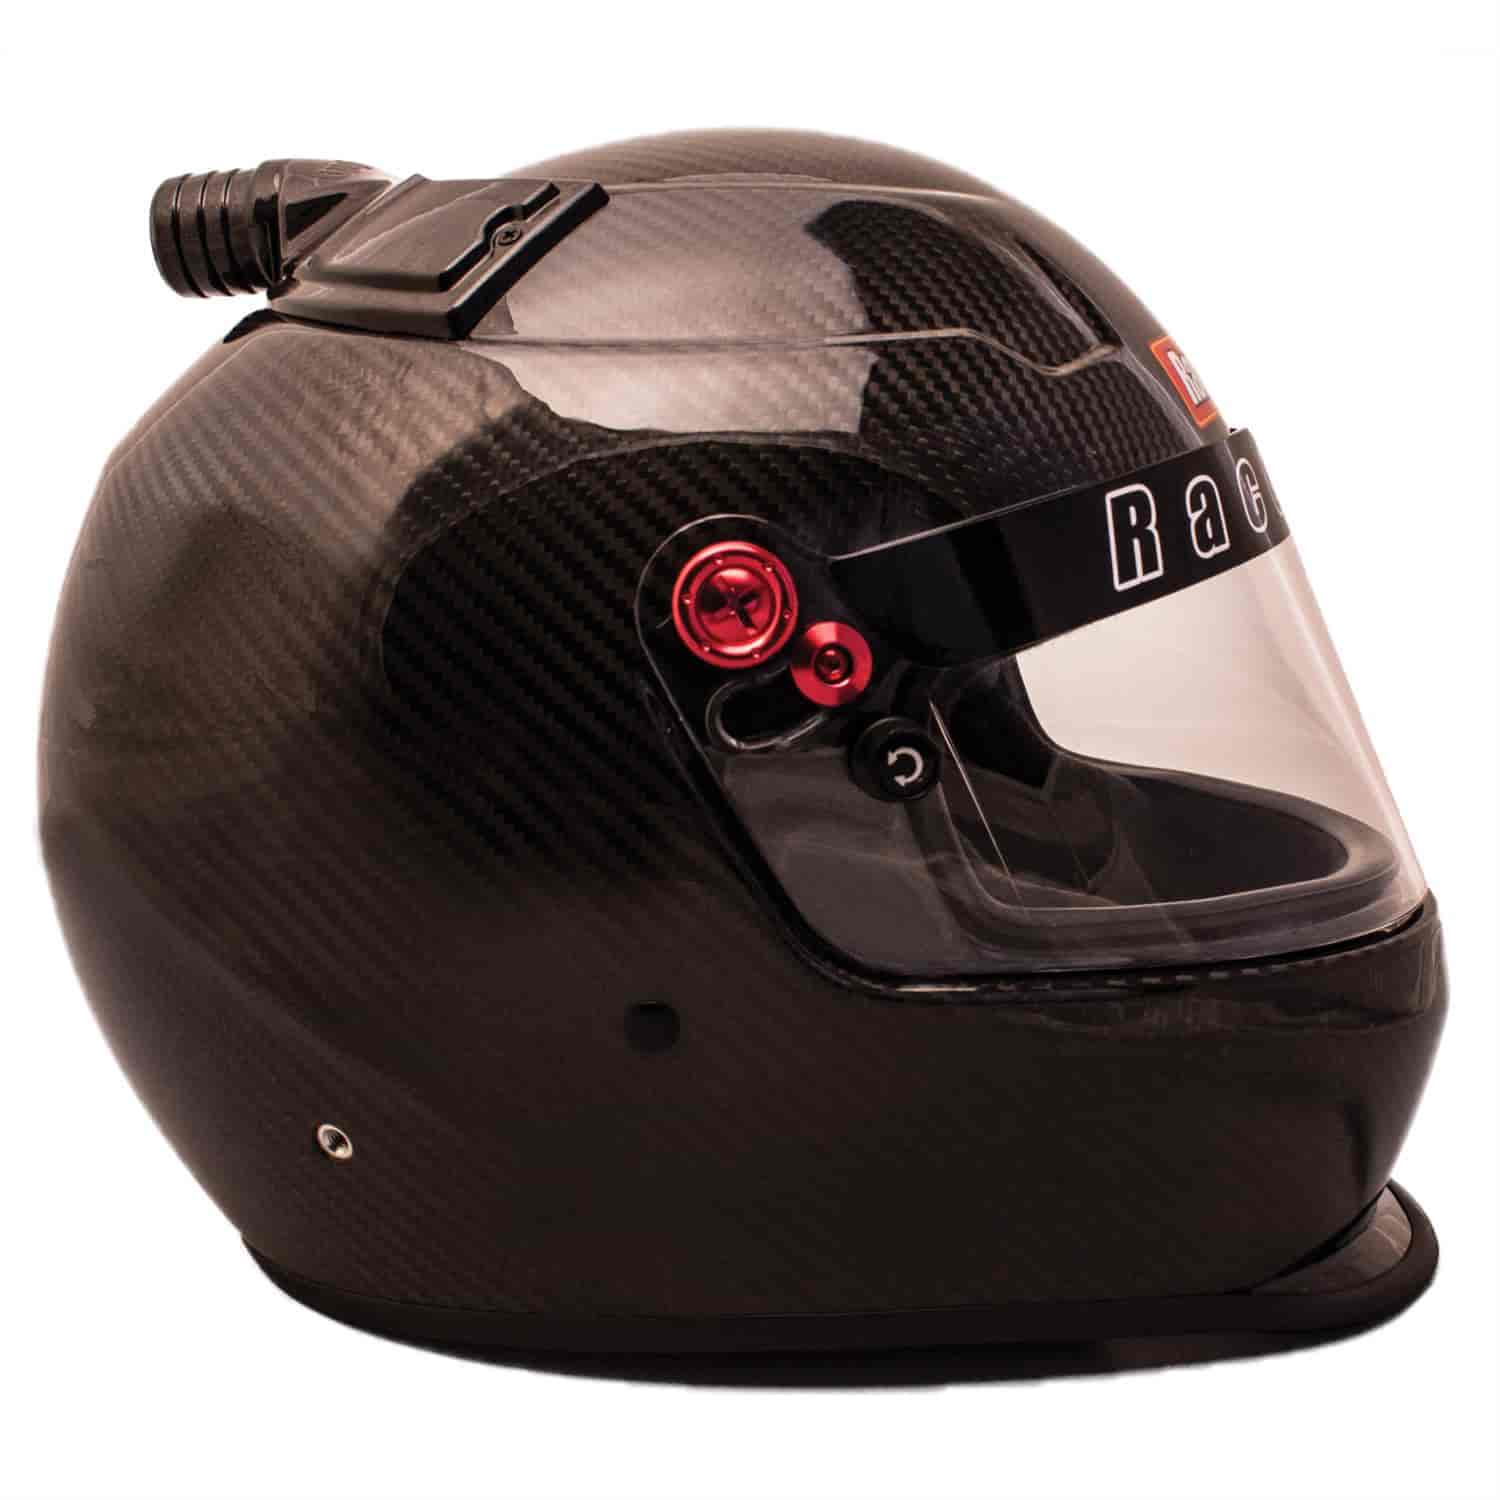 RaceQuip Top Air Pro20 SA2020 Racing Helmets